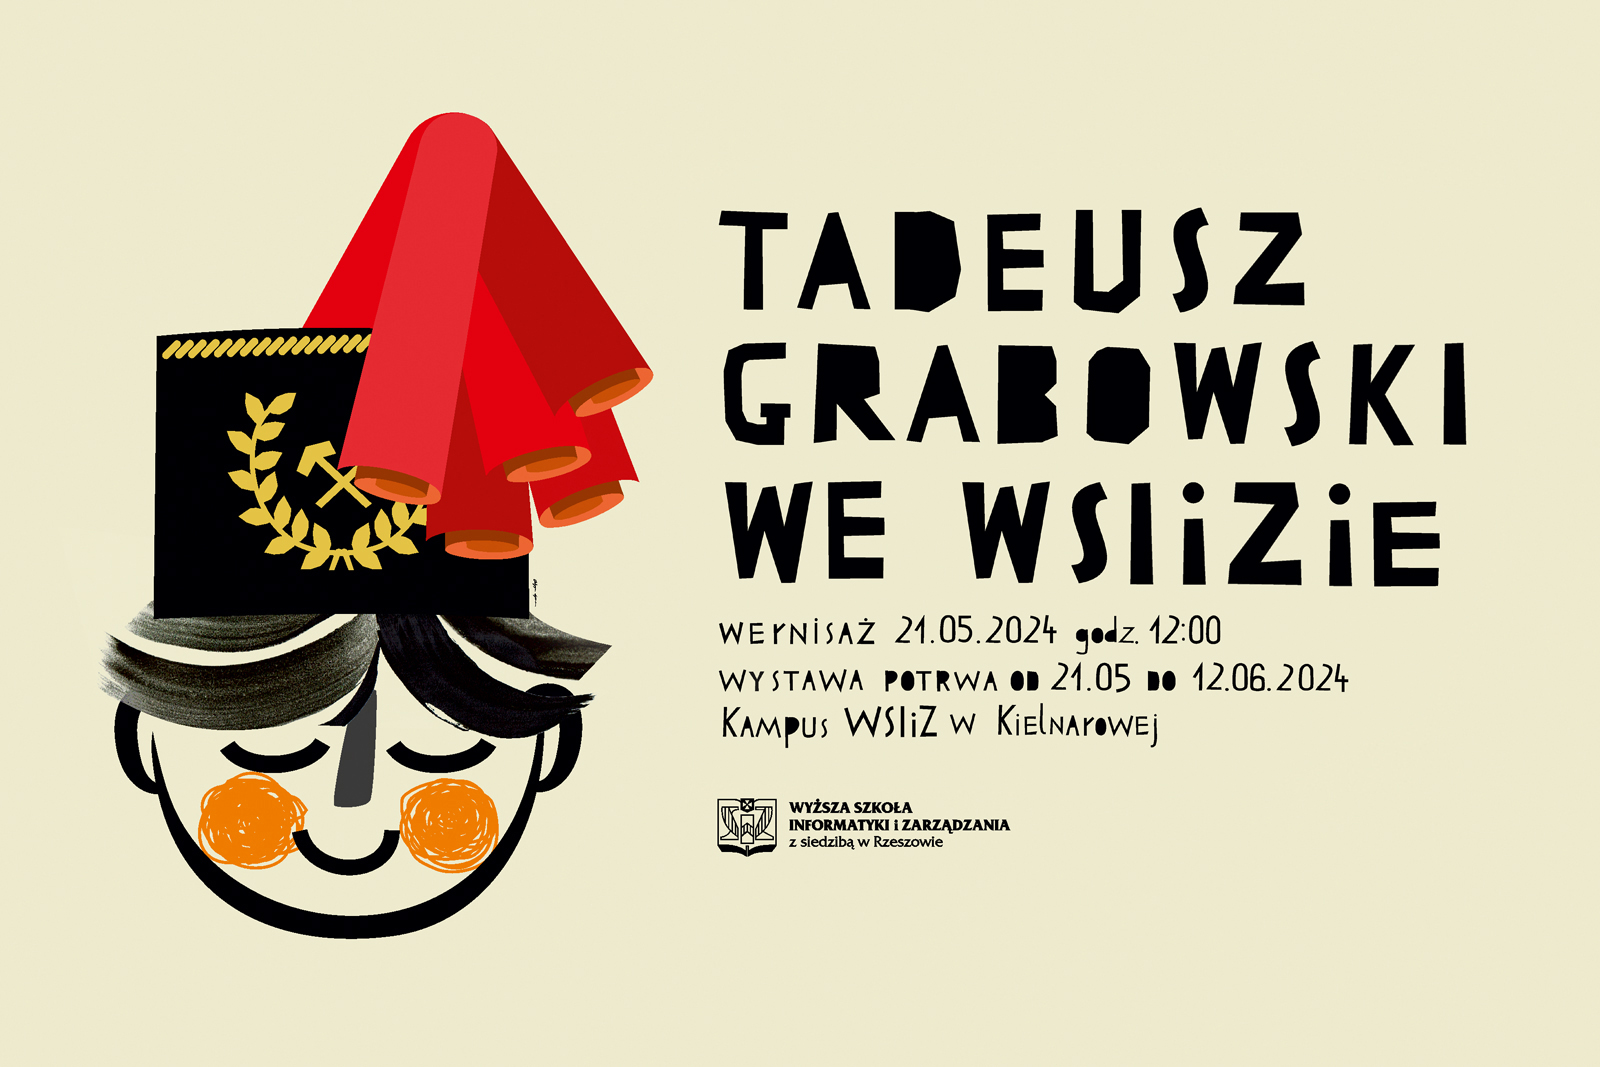 Tadeusz Grabowski we WSIiZie